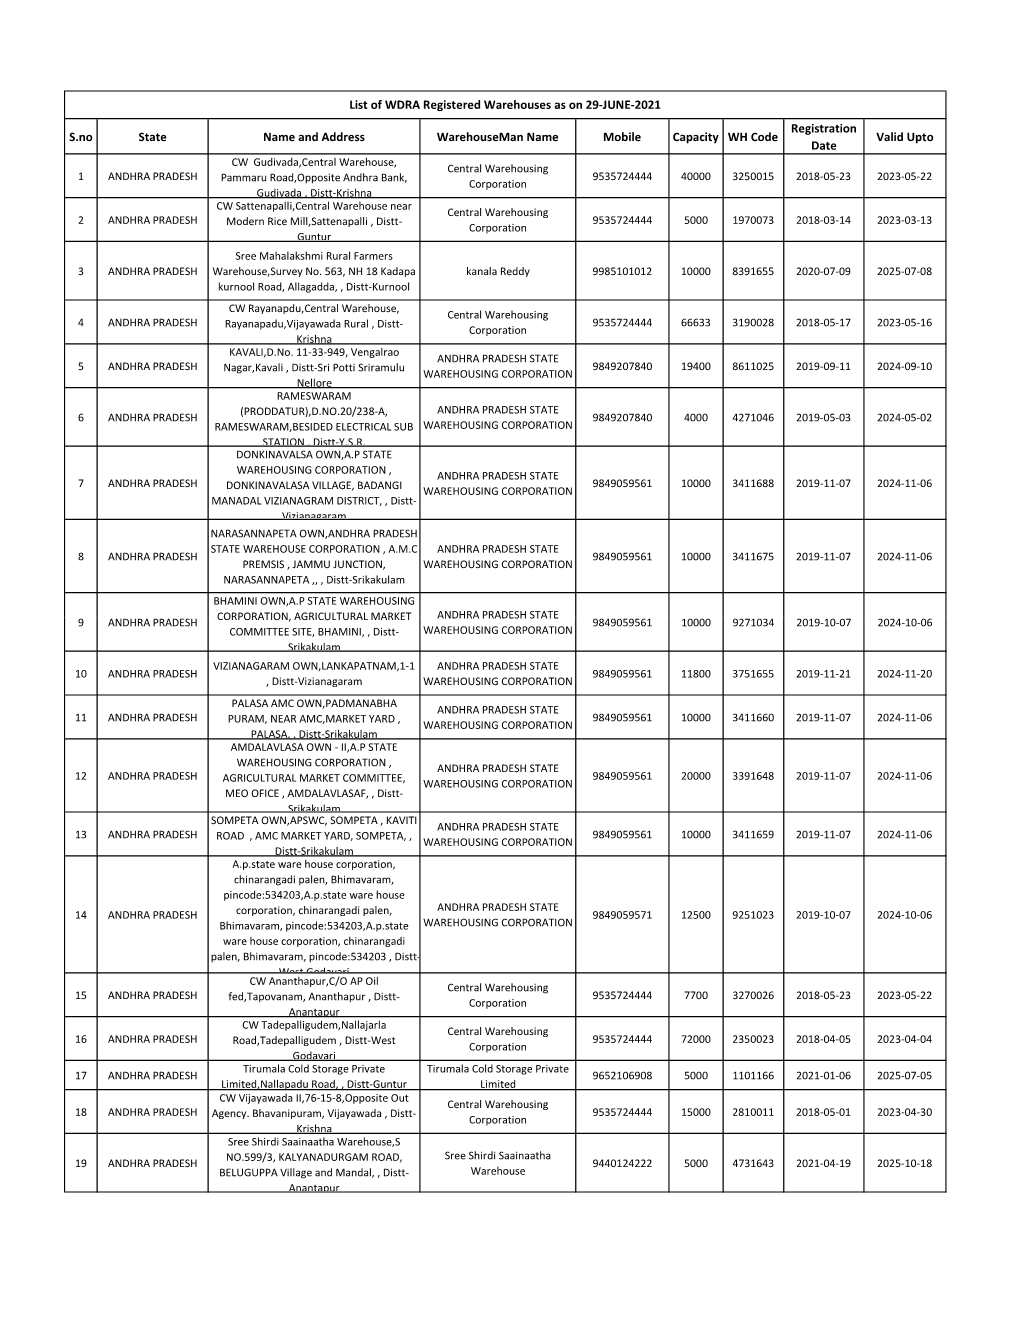 List of WDRA Registered Warehouses As on 29-JUNE-2021